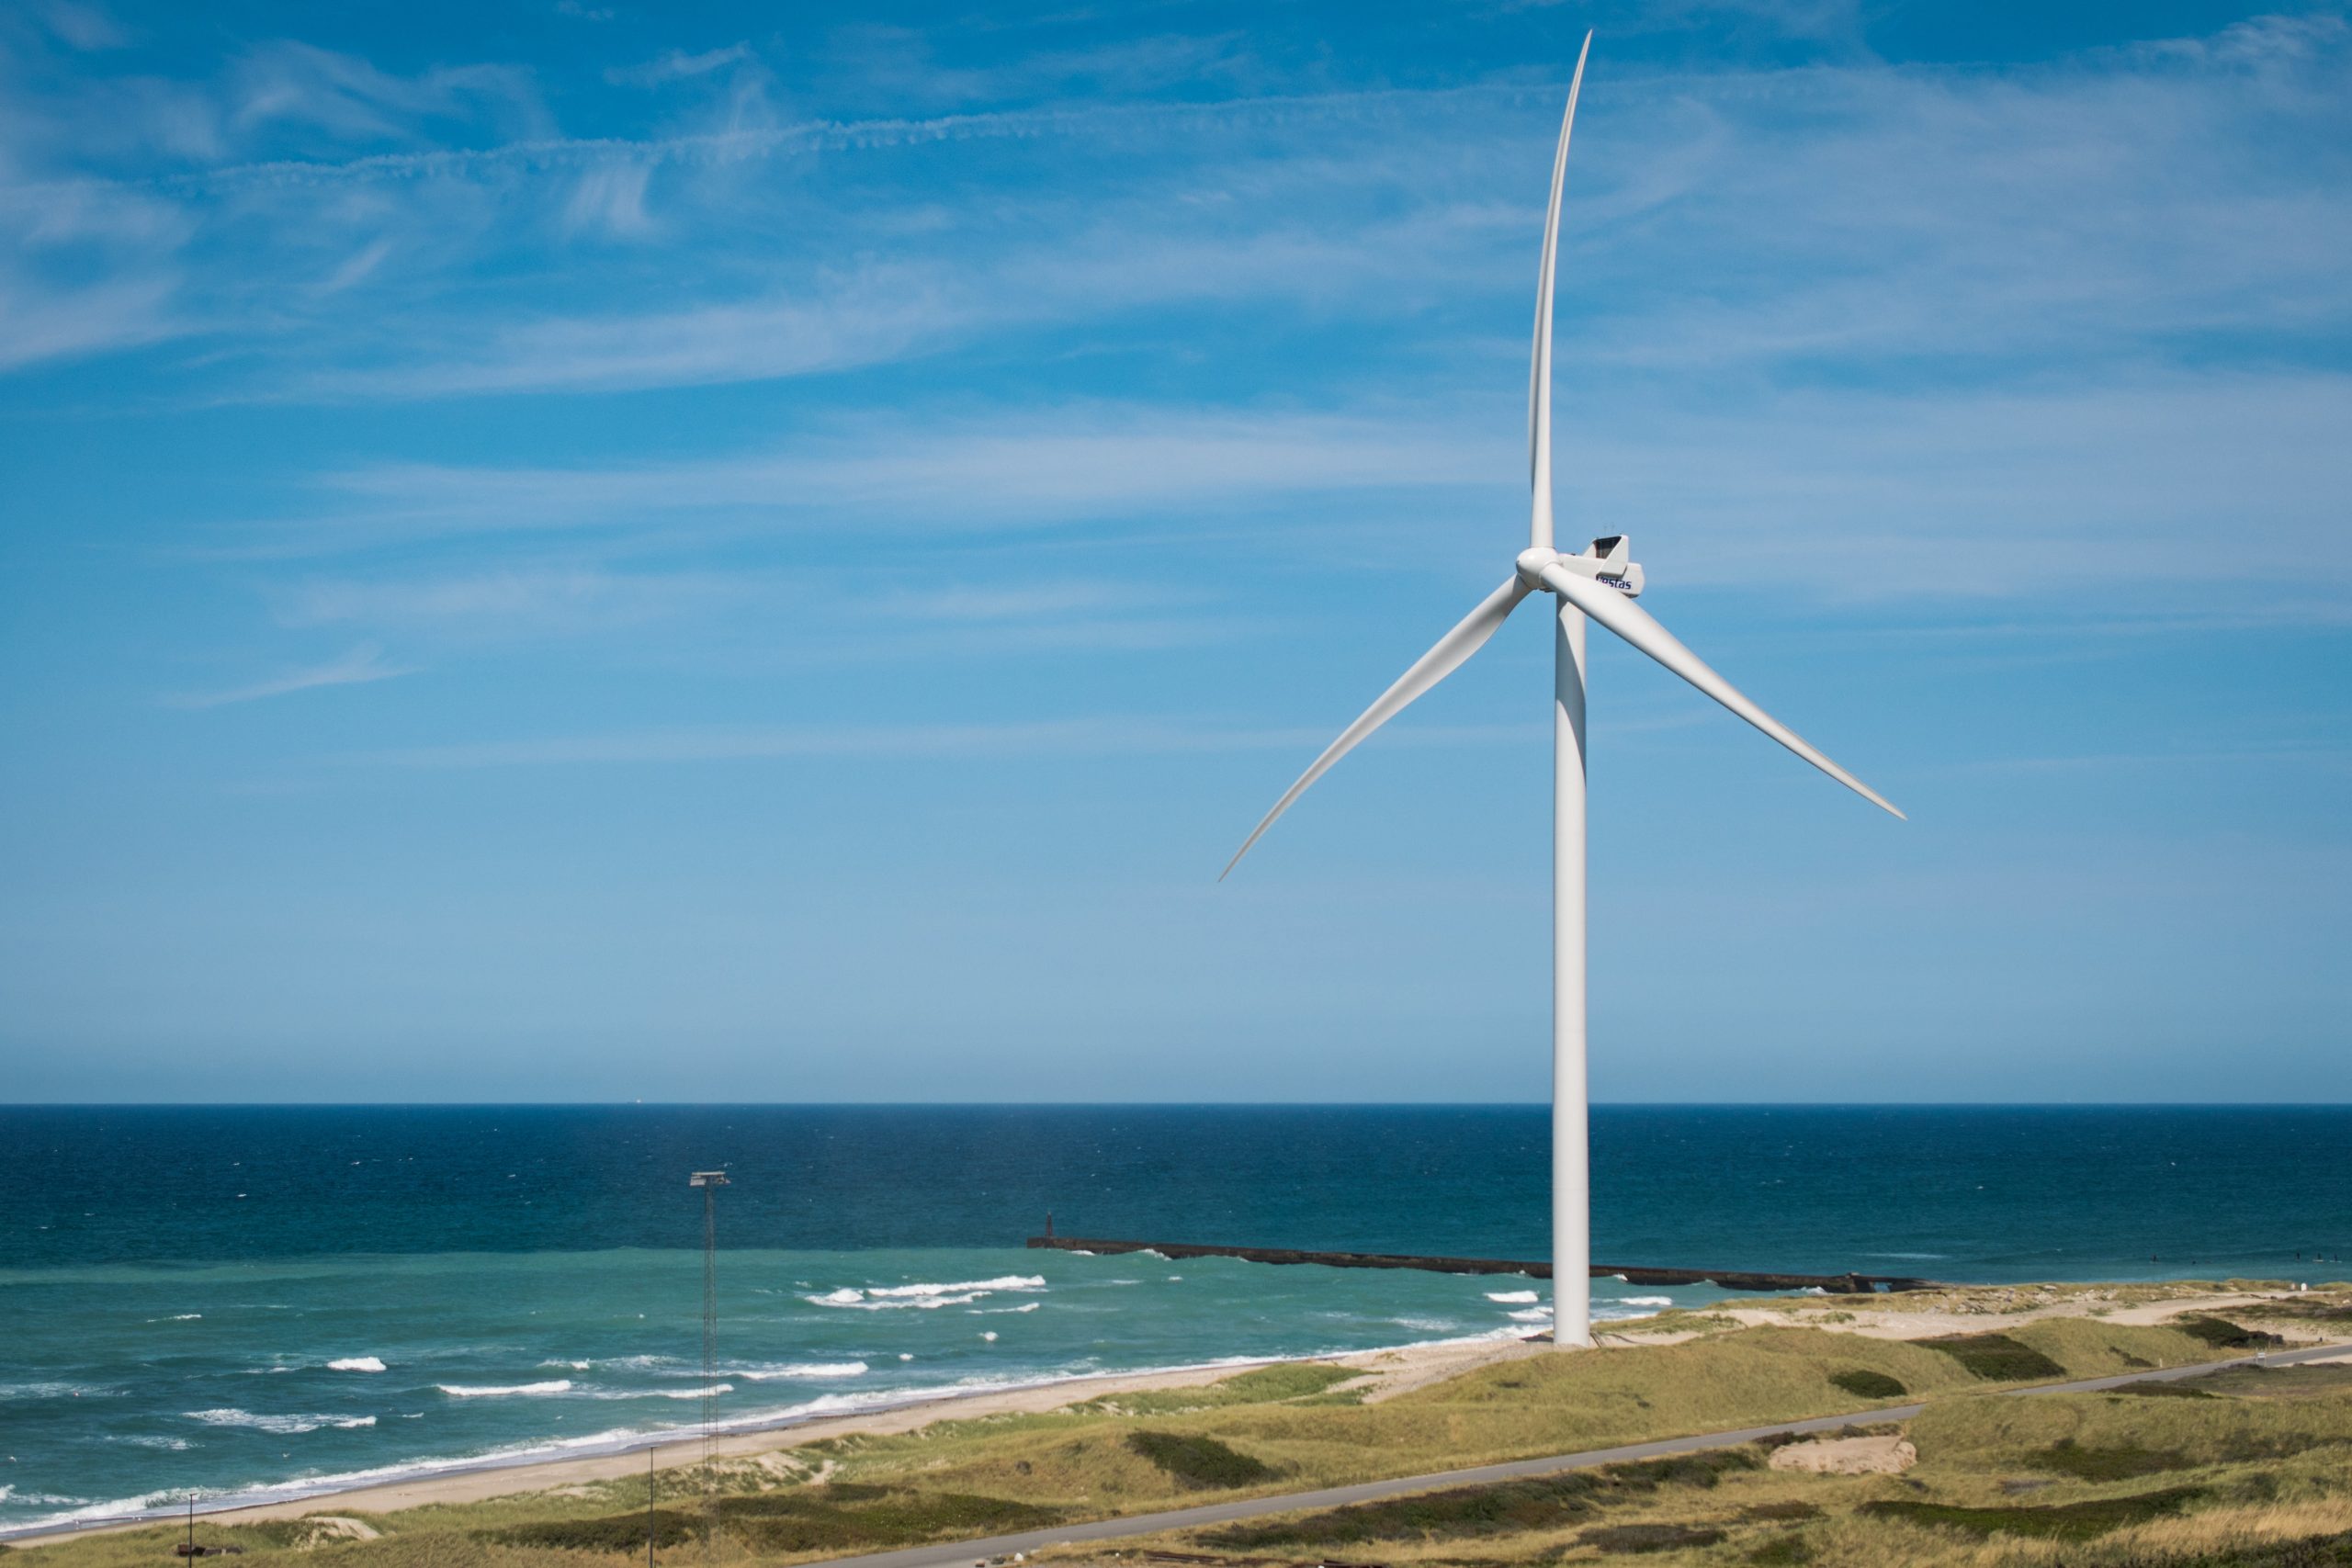 Polskie uczelnie mogą skorzystać na wielkich projektach morskich farm wiatrowych. Spółki z branży angażują się w kształcenie przyszłych kadr